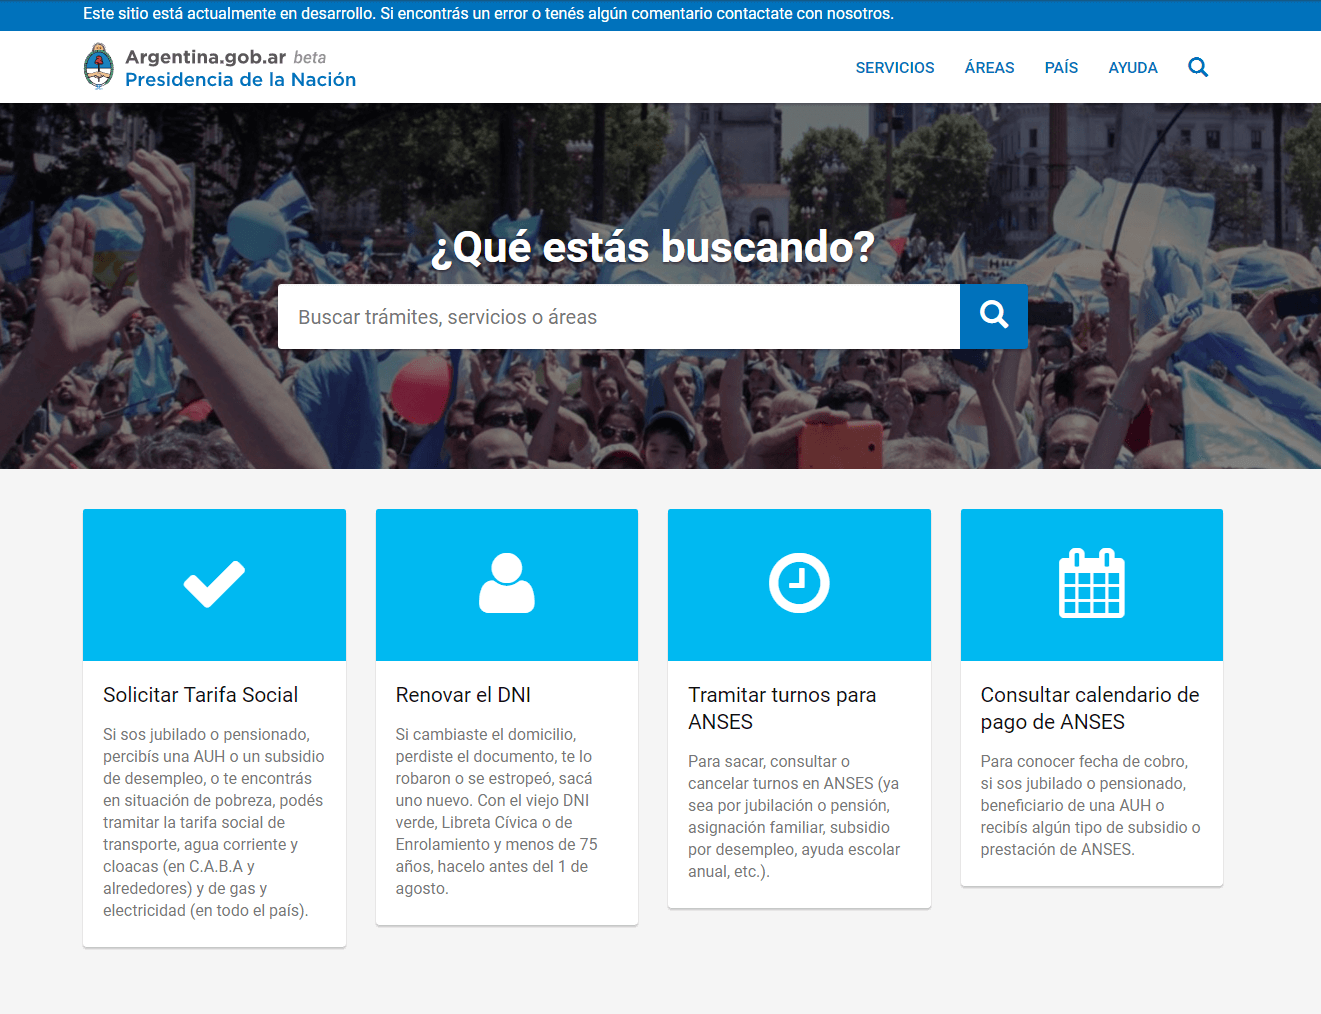 Captura de pantalla de Argentina.gob.ar a comienzos de 2016